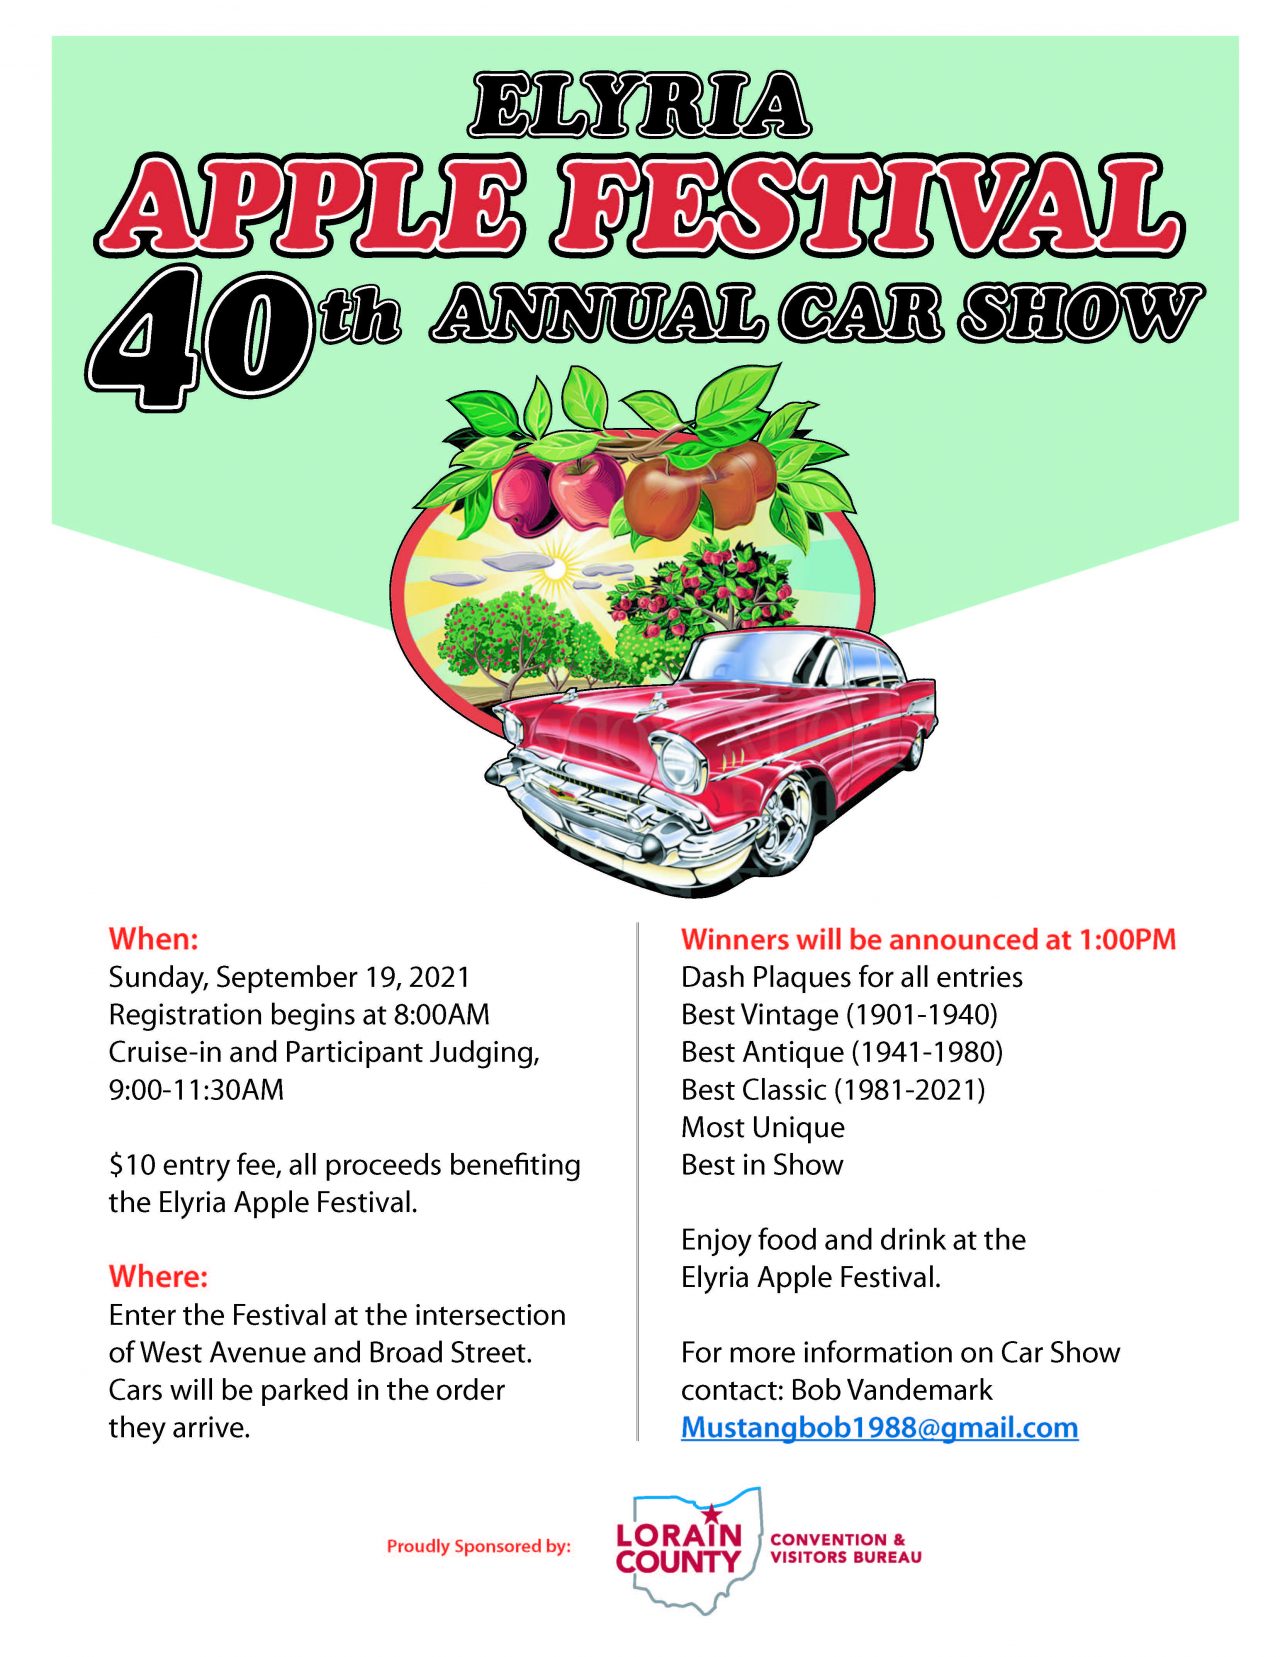 Apple Festival 40th annual Car Show Sunday, September 19, 2021 City